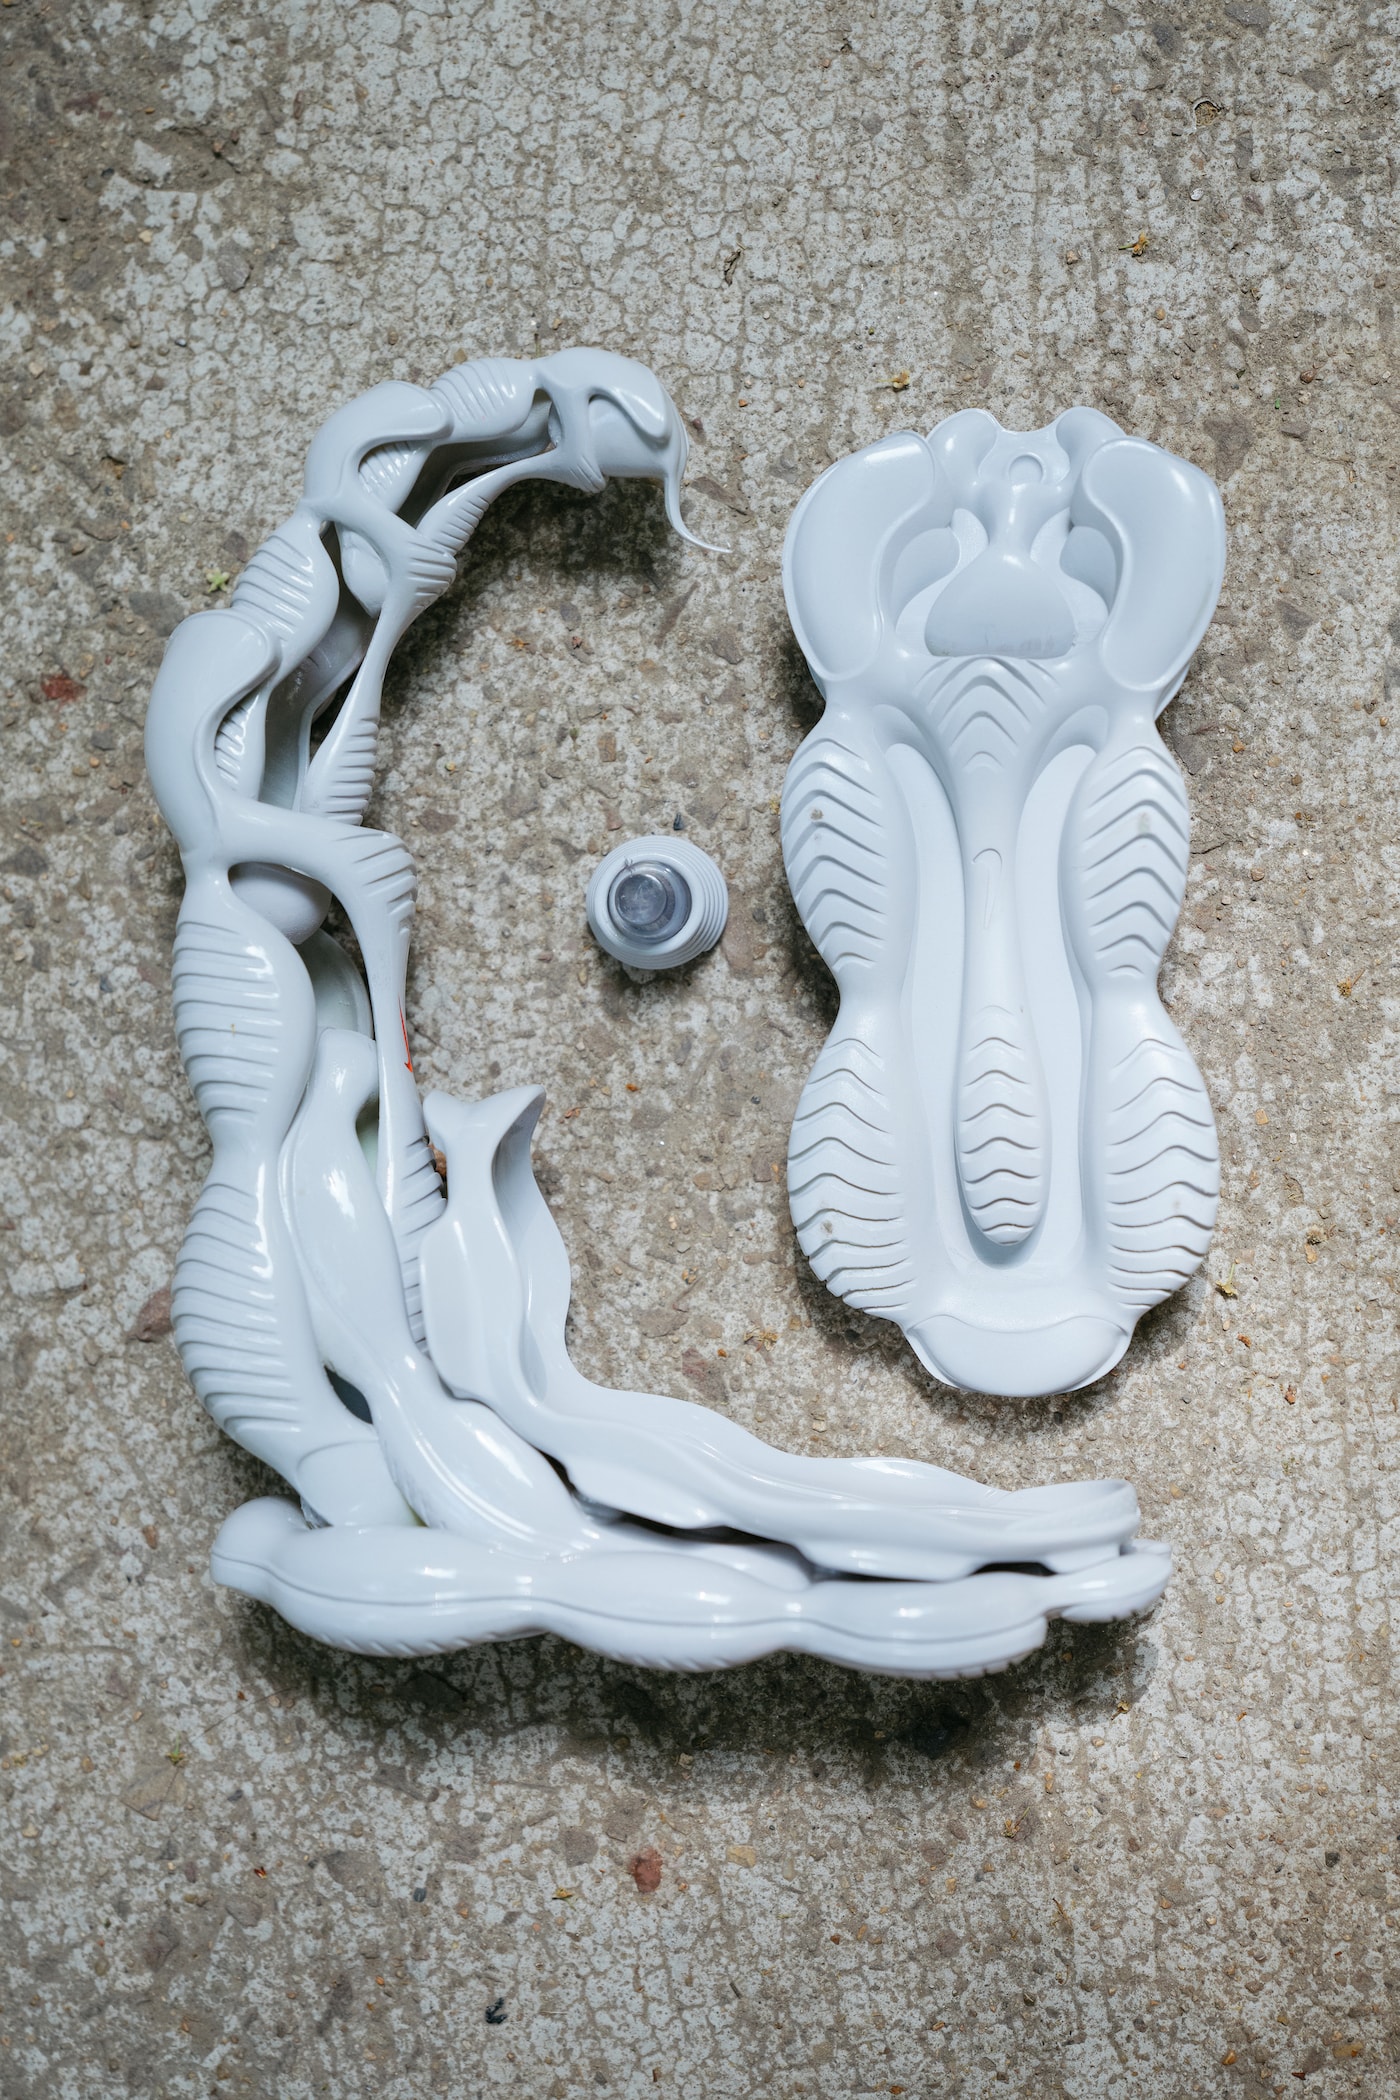 新锐艺术家 Yang 分享 Air Max Scorpion 球鞋雕塑创作故事 | Sole Mates